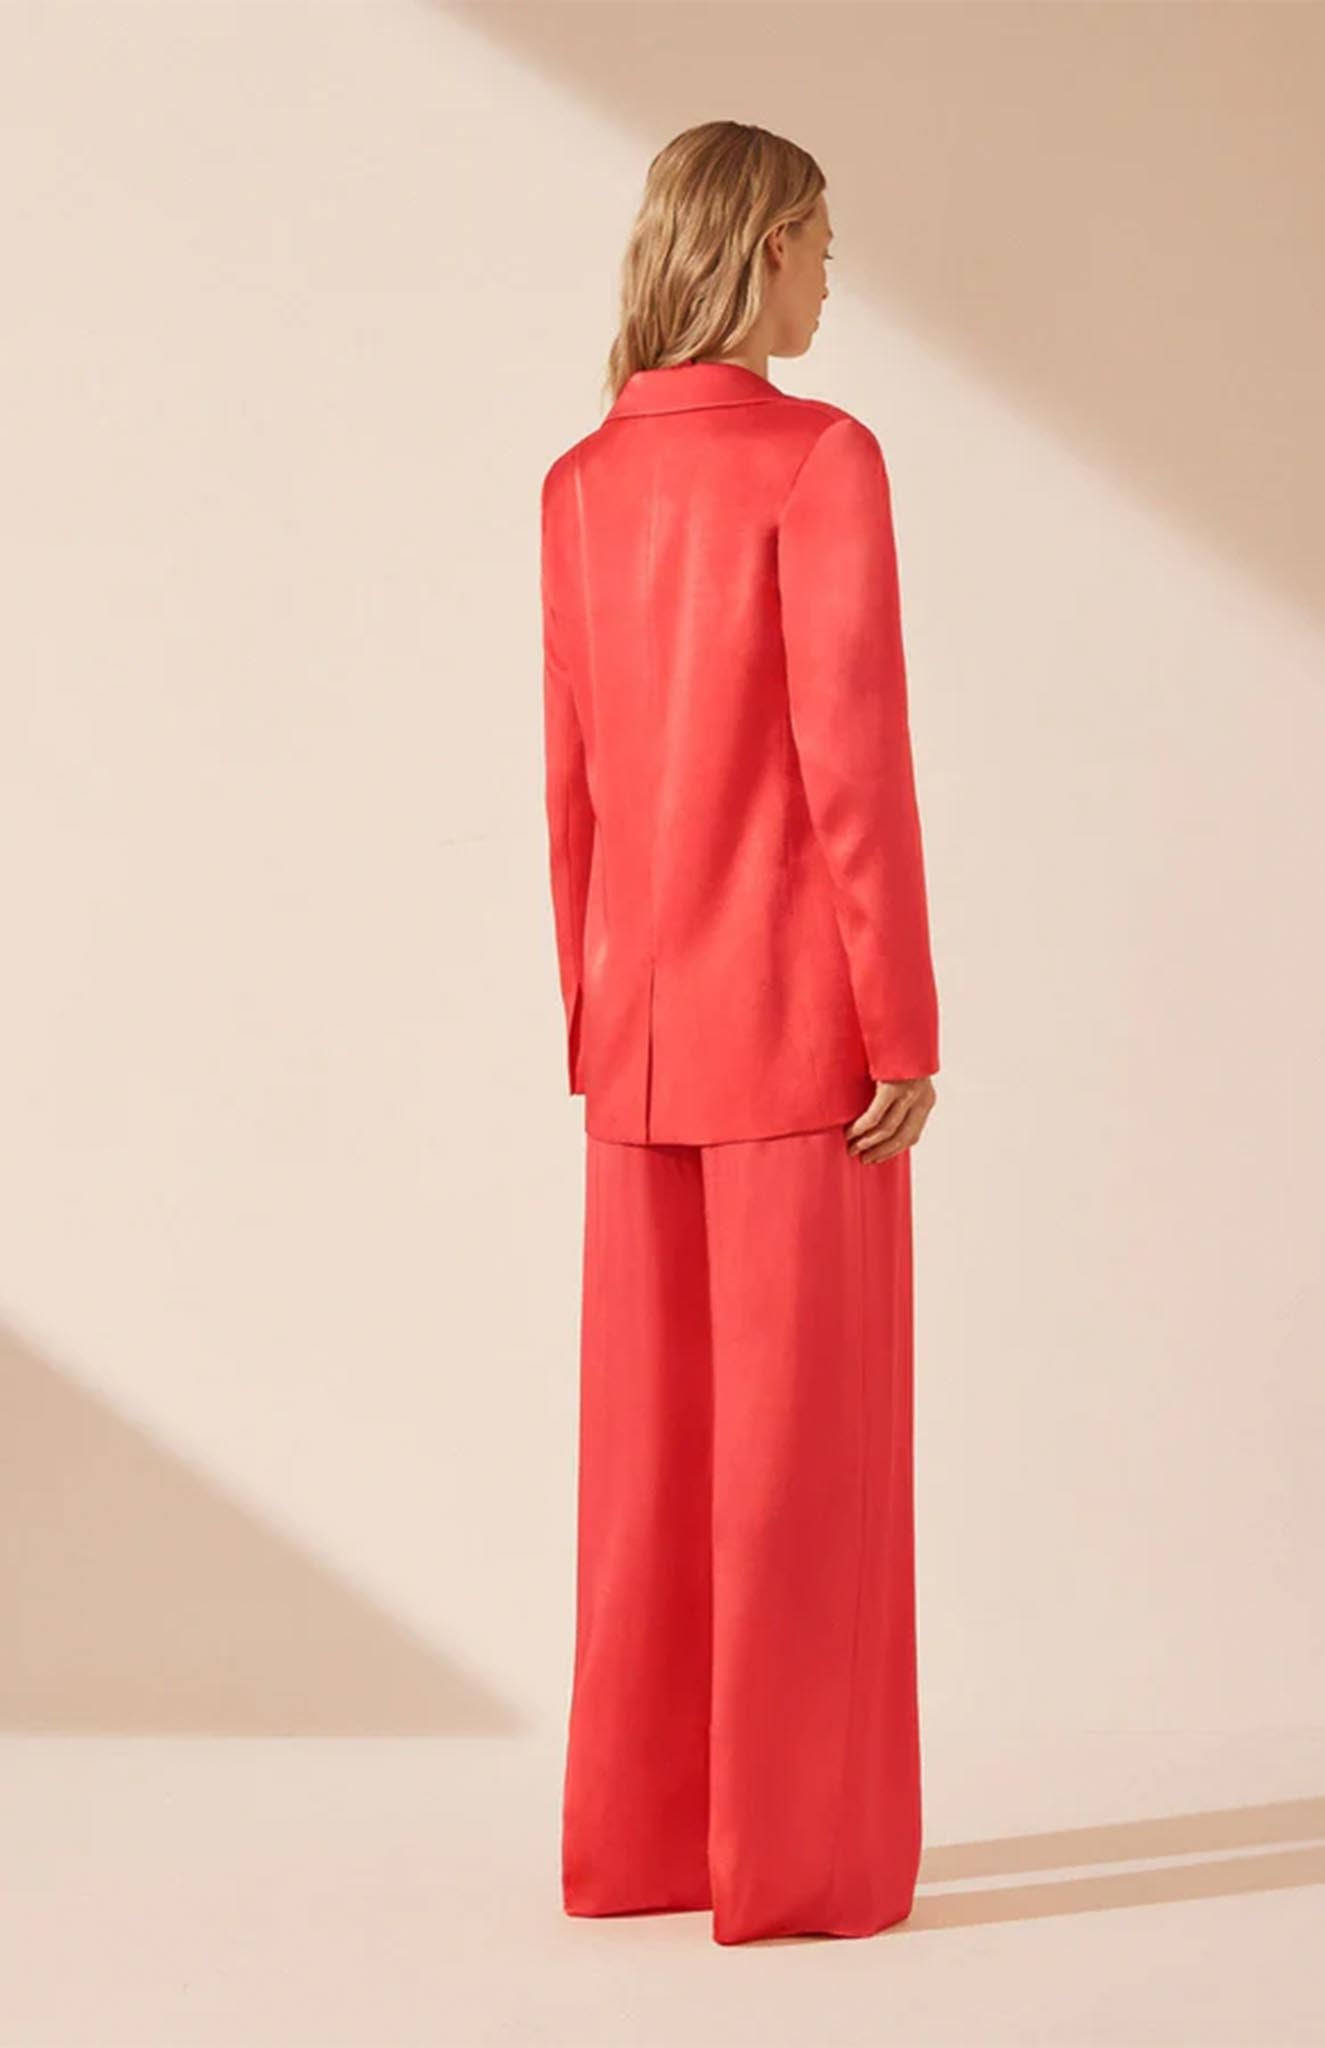 Luxeliv-women-blazer set-co-ord-formal-wear-officewear-red-orange